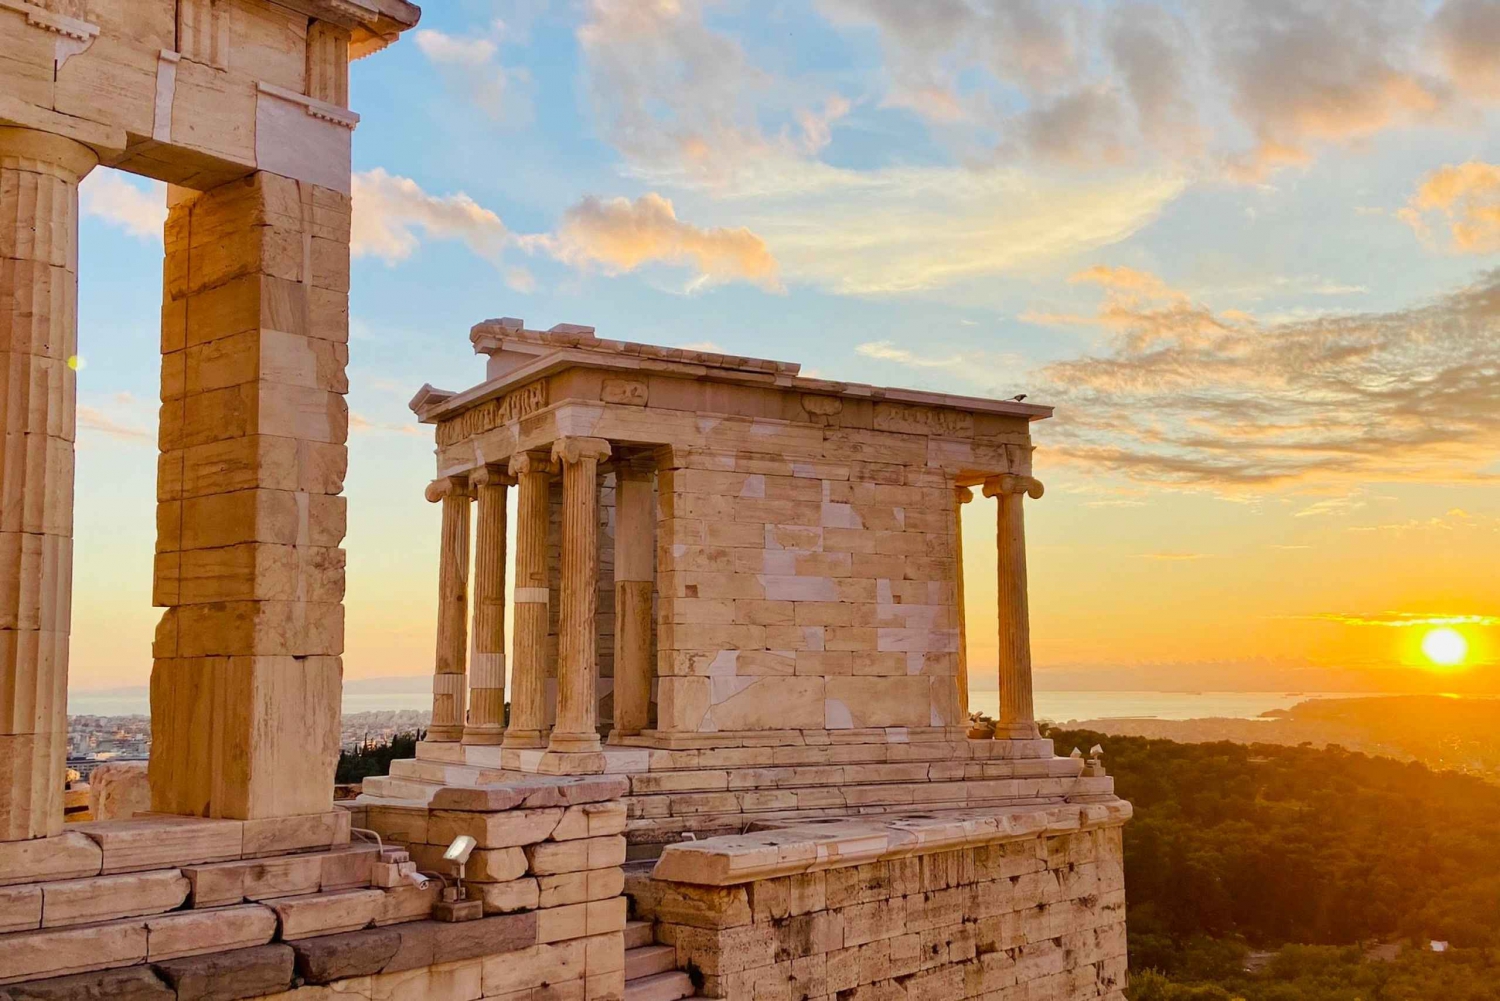 Ateny: Prywatna wycieczka z przewodnikiem po Akropolu bez biletu wstępu